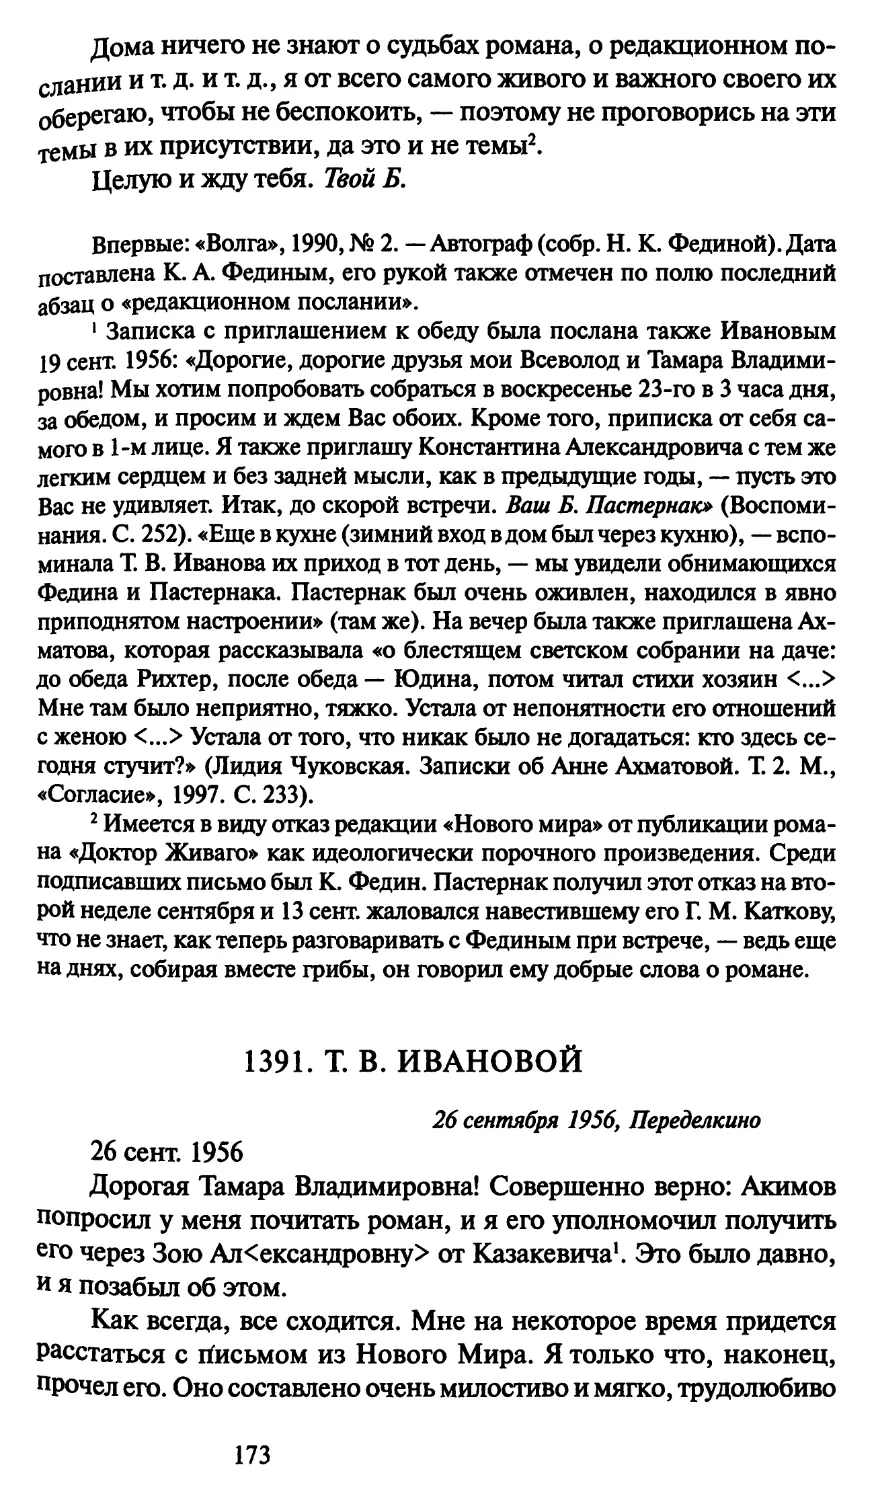 1391. Т. В. Ивановой 26 сентября 1956